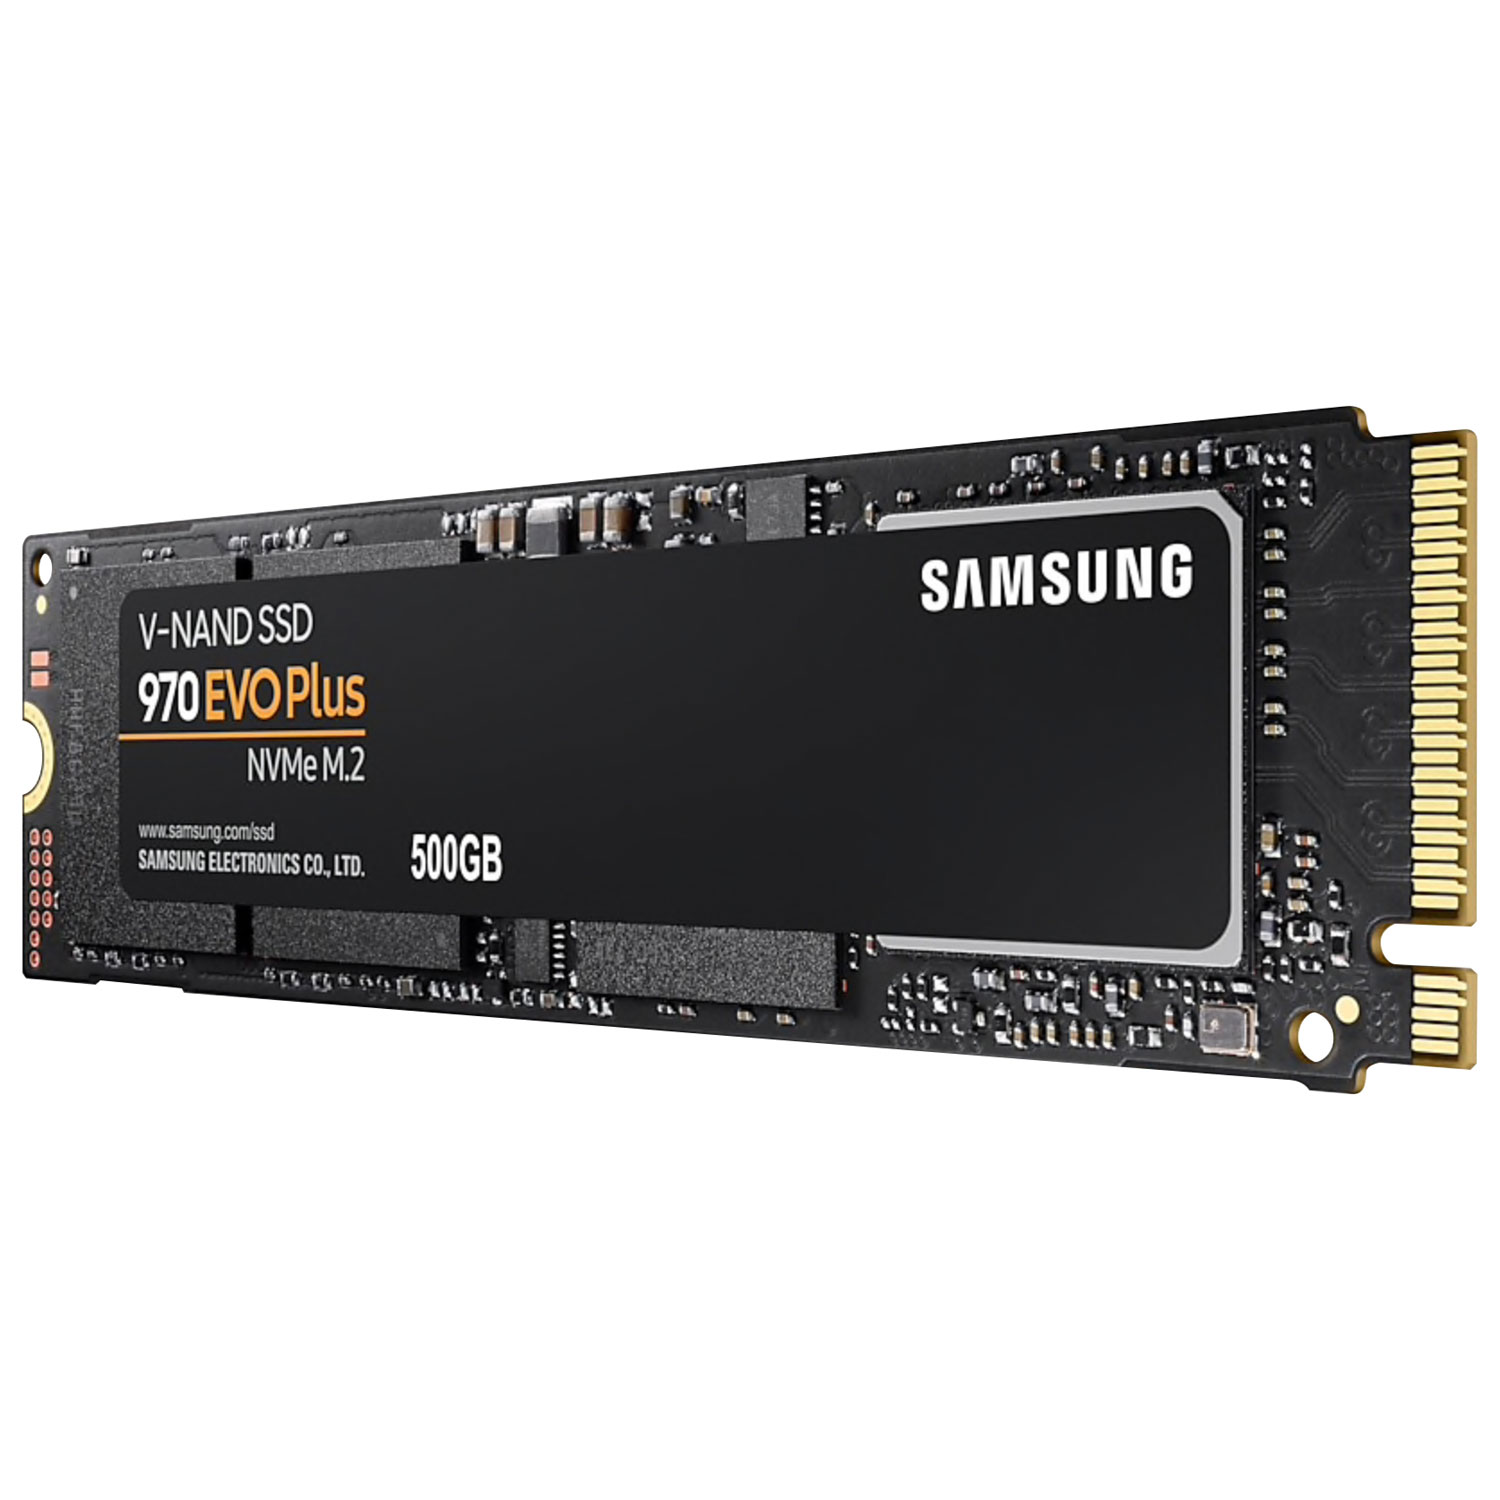 Samsung 970 EVO Plus 500GB M.2 NVMe Internal Solid State Drive  (MZ-V7S500B/AM) - English